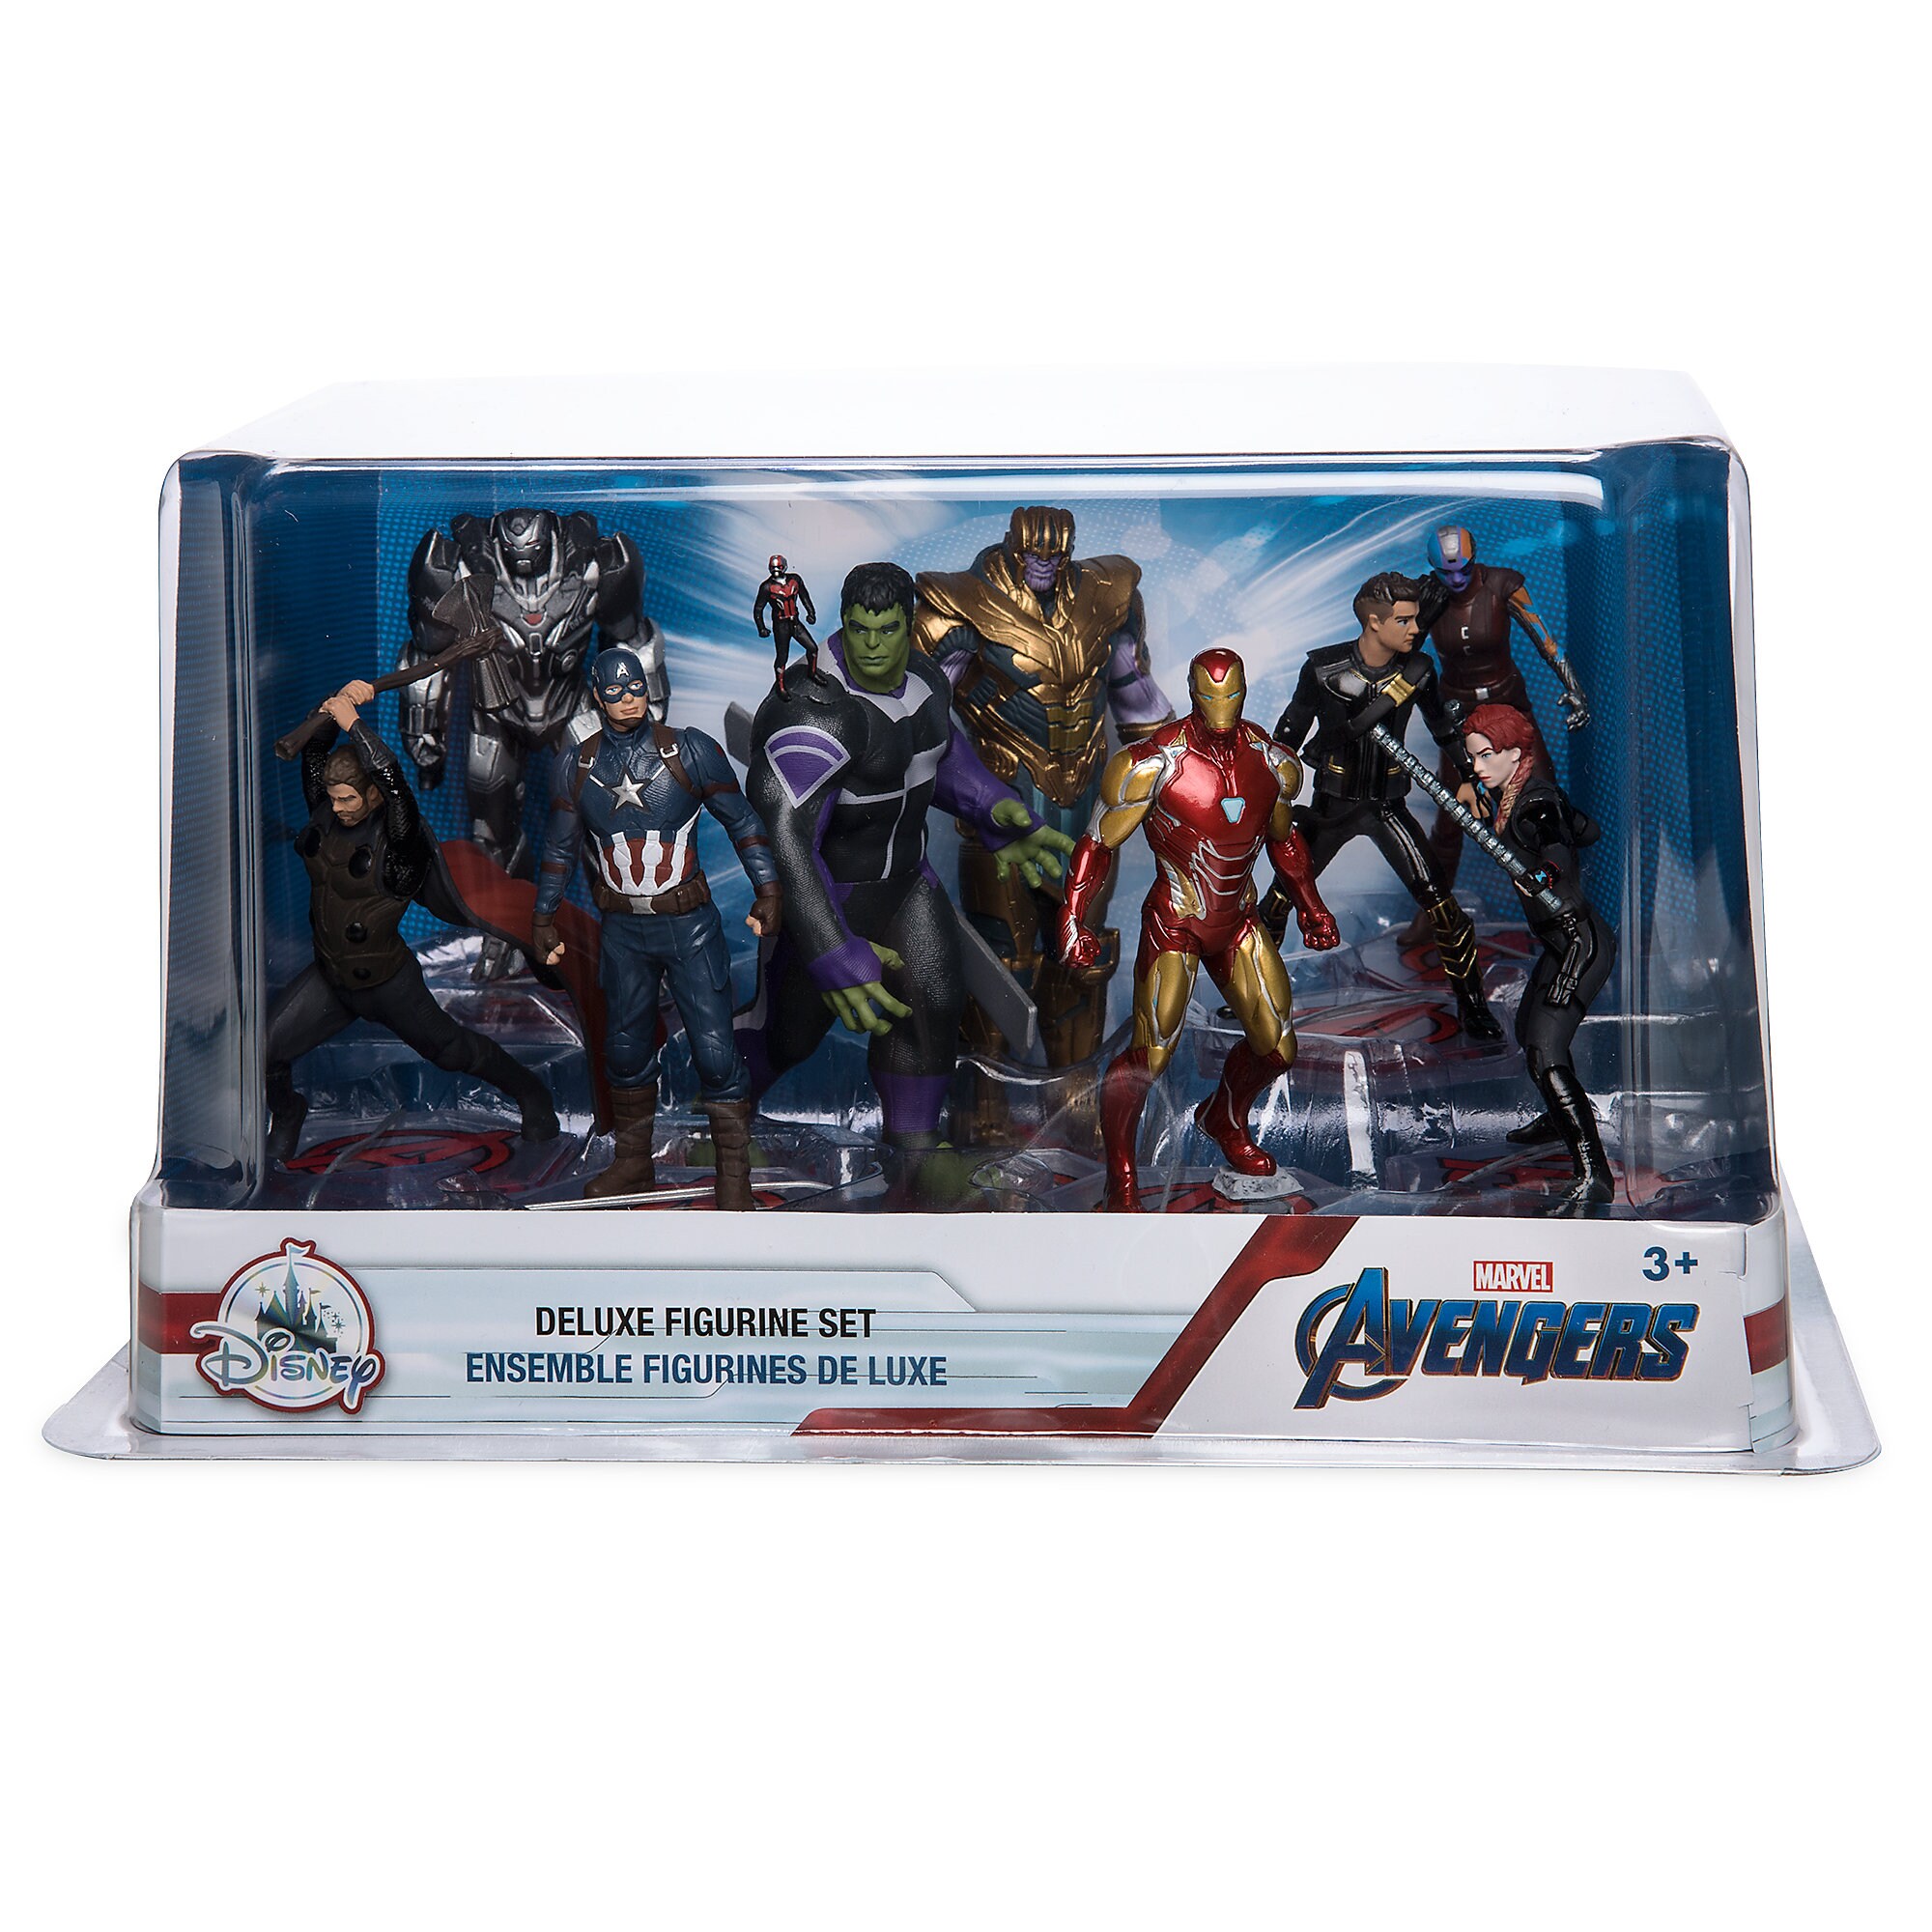 Marvel's Avengers Deluxe Figure Play Set - Marvel's Avengers: Endgame